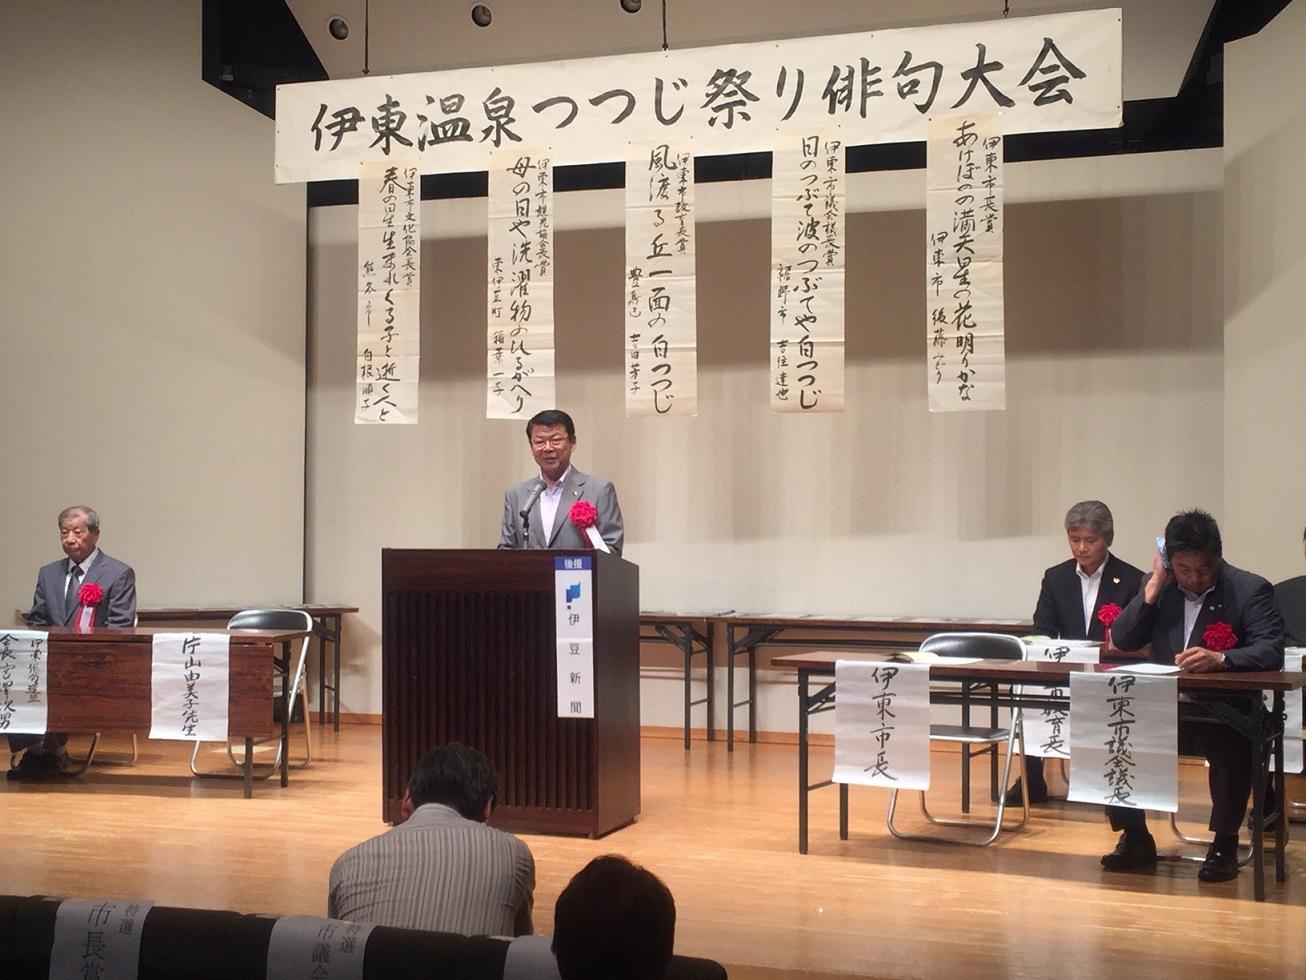 「伊東温泉つつじ祭り 俳句大会」の表彰式で挨拶をする伊東市長の写真